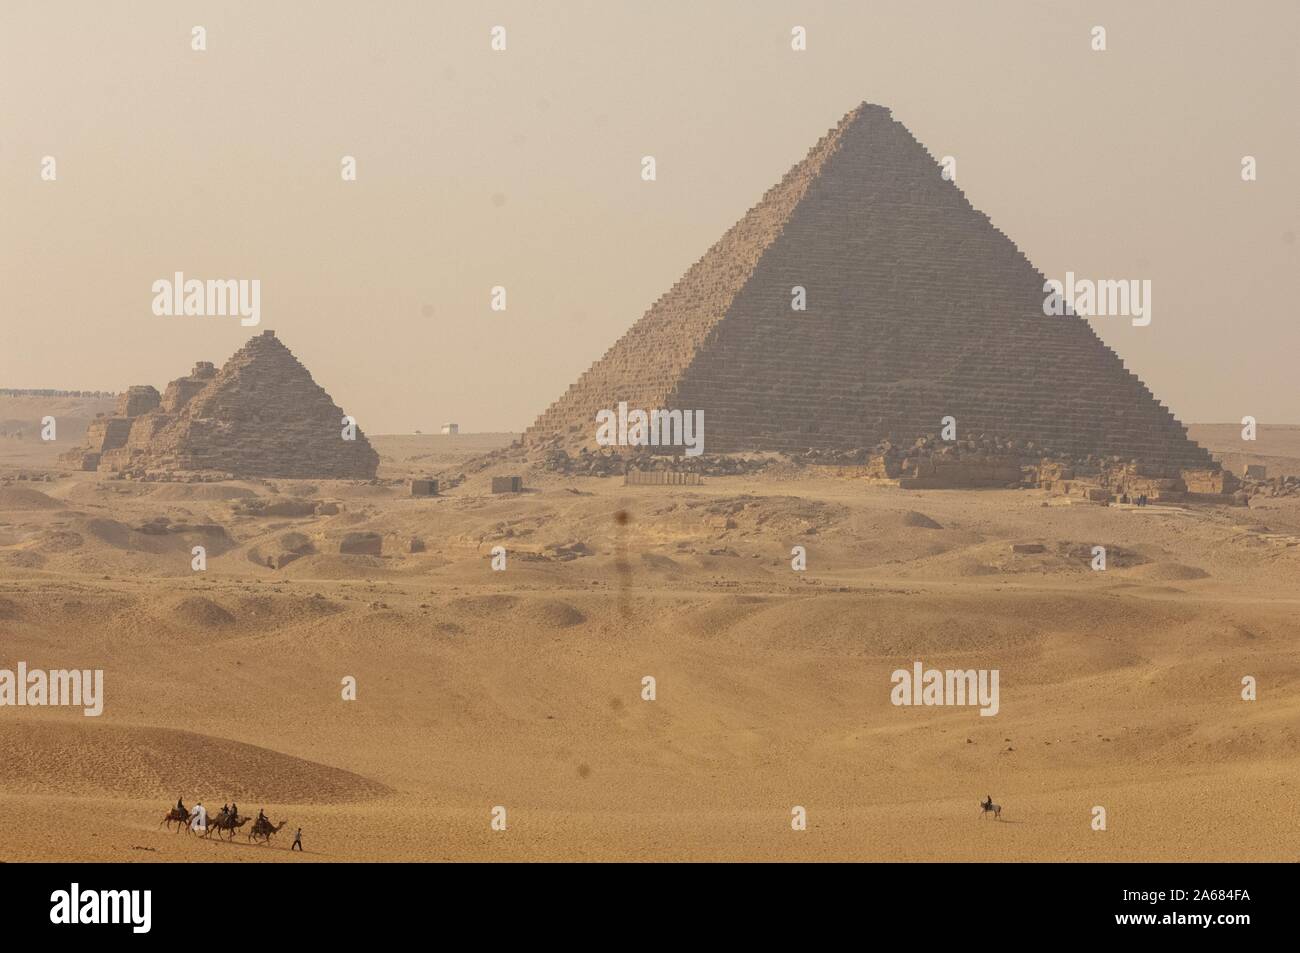 Menkaure Pyramide Komplex, an einem sonnigen Tag, mit Menschen reiten Kamele und ein Pferd, auf Sanddünen im Vordergrund, Giza, Ägypten, 7. Januar 2008. Vom Homewood Sammlung Fotografie. () Stockfoto